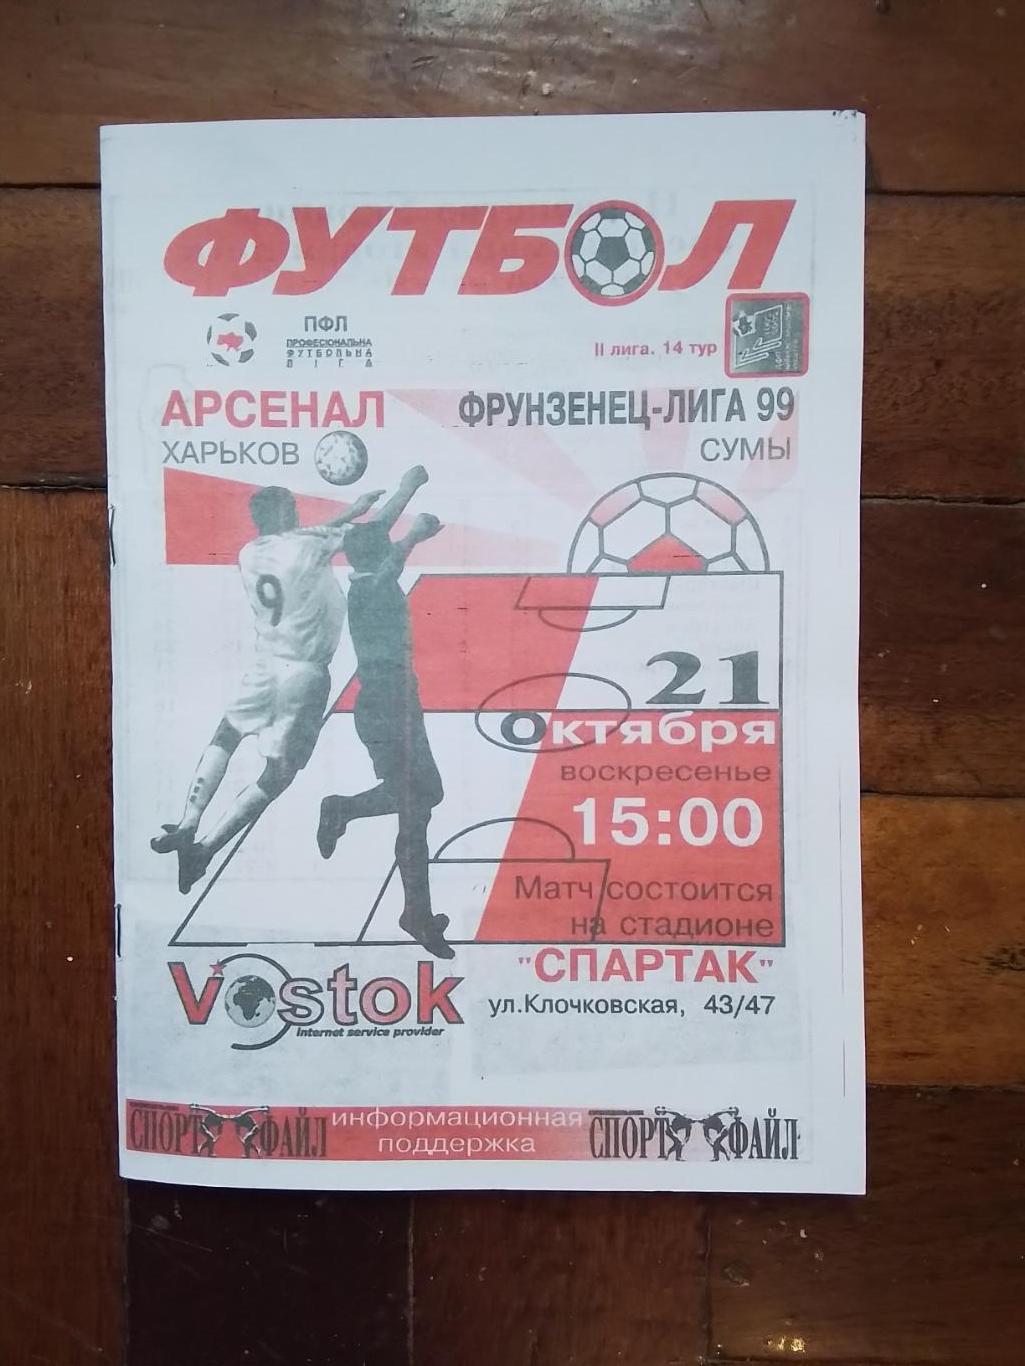 Арсенал Харьков - Фрунзенец-Лига-99 Сумы 2001 - 2002